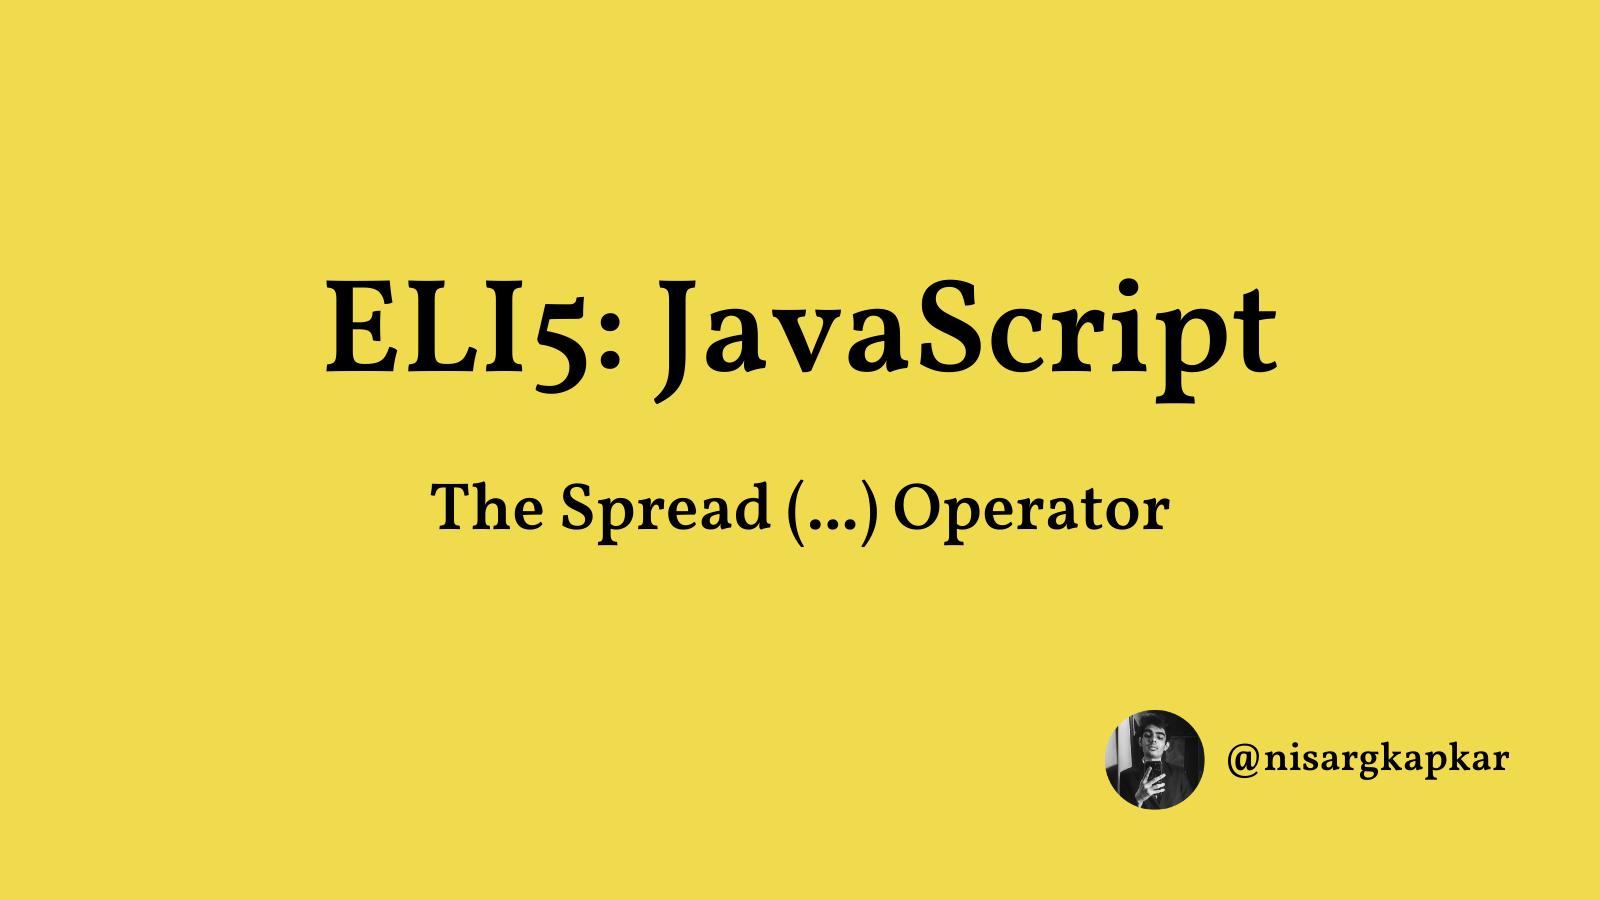 ELI5 JavaScript: The Spread Operator